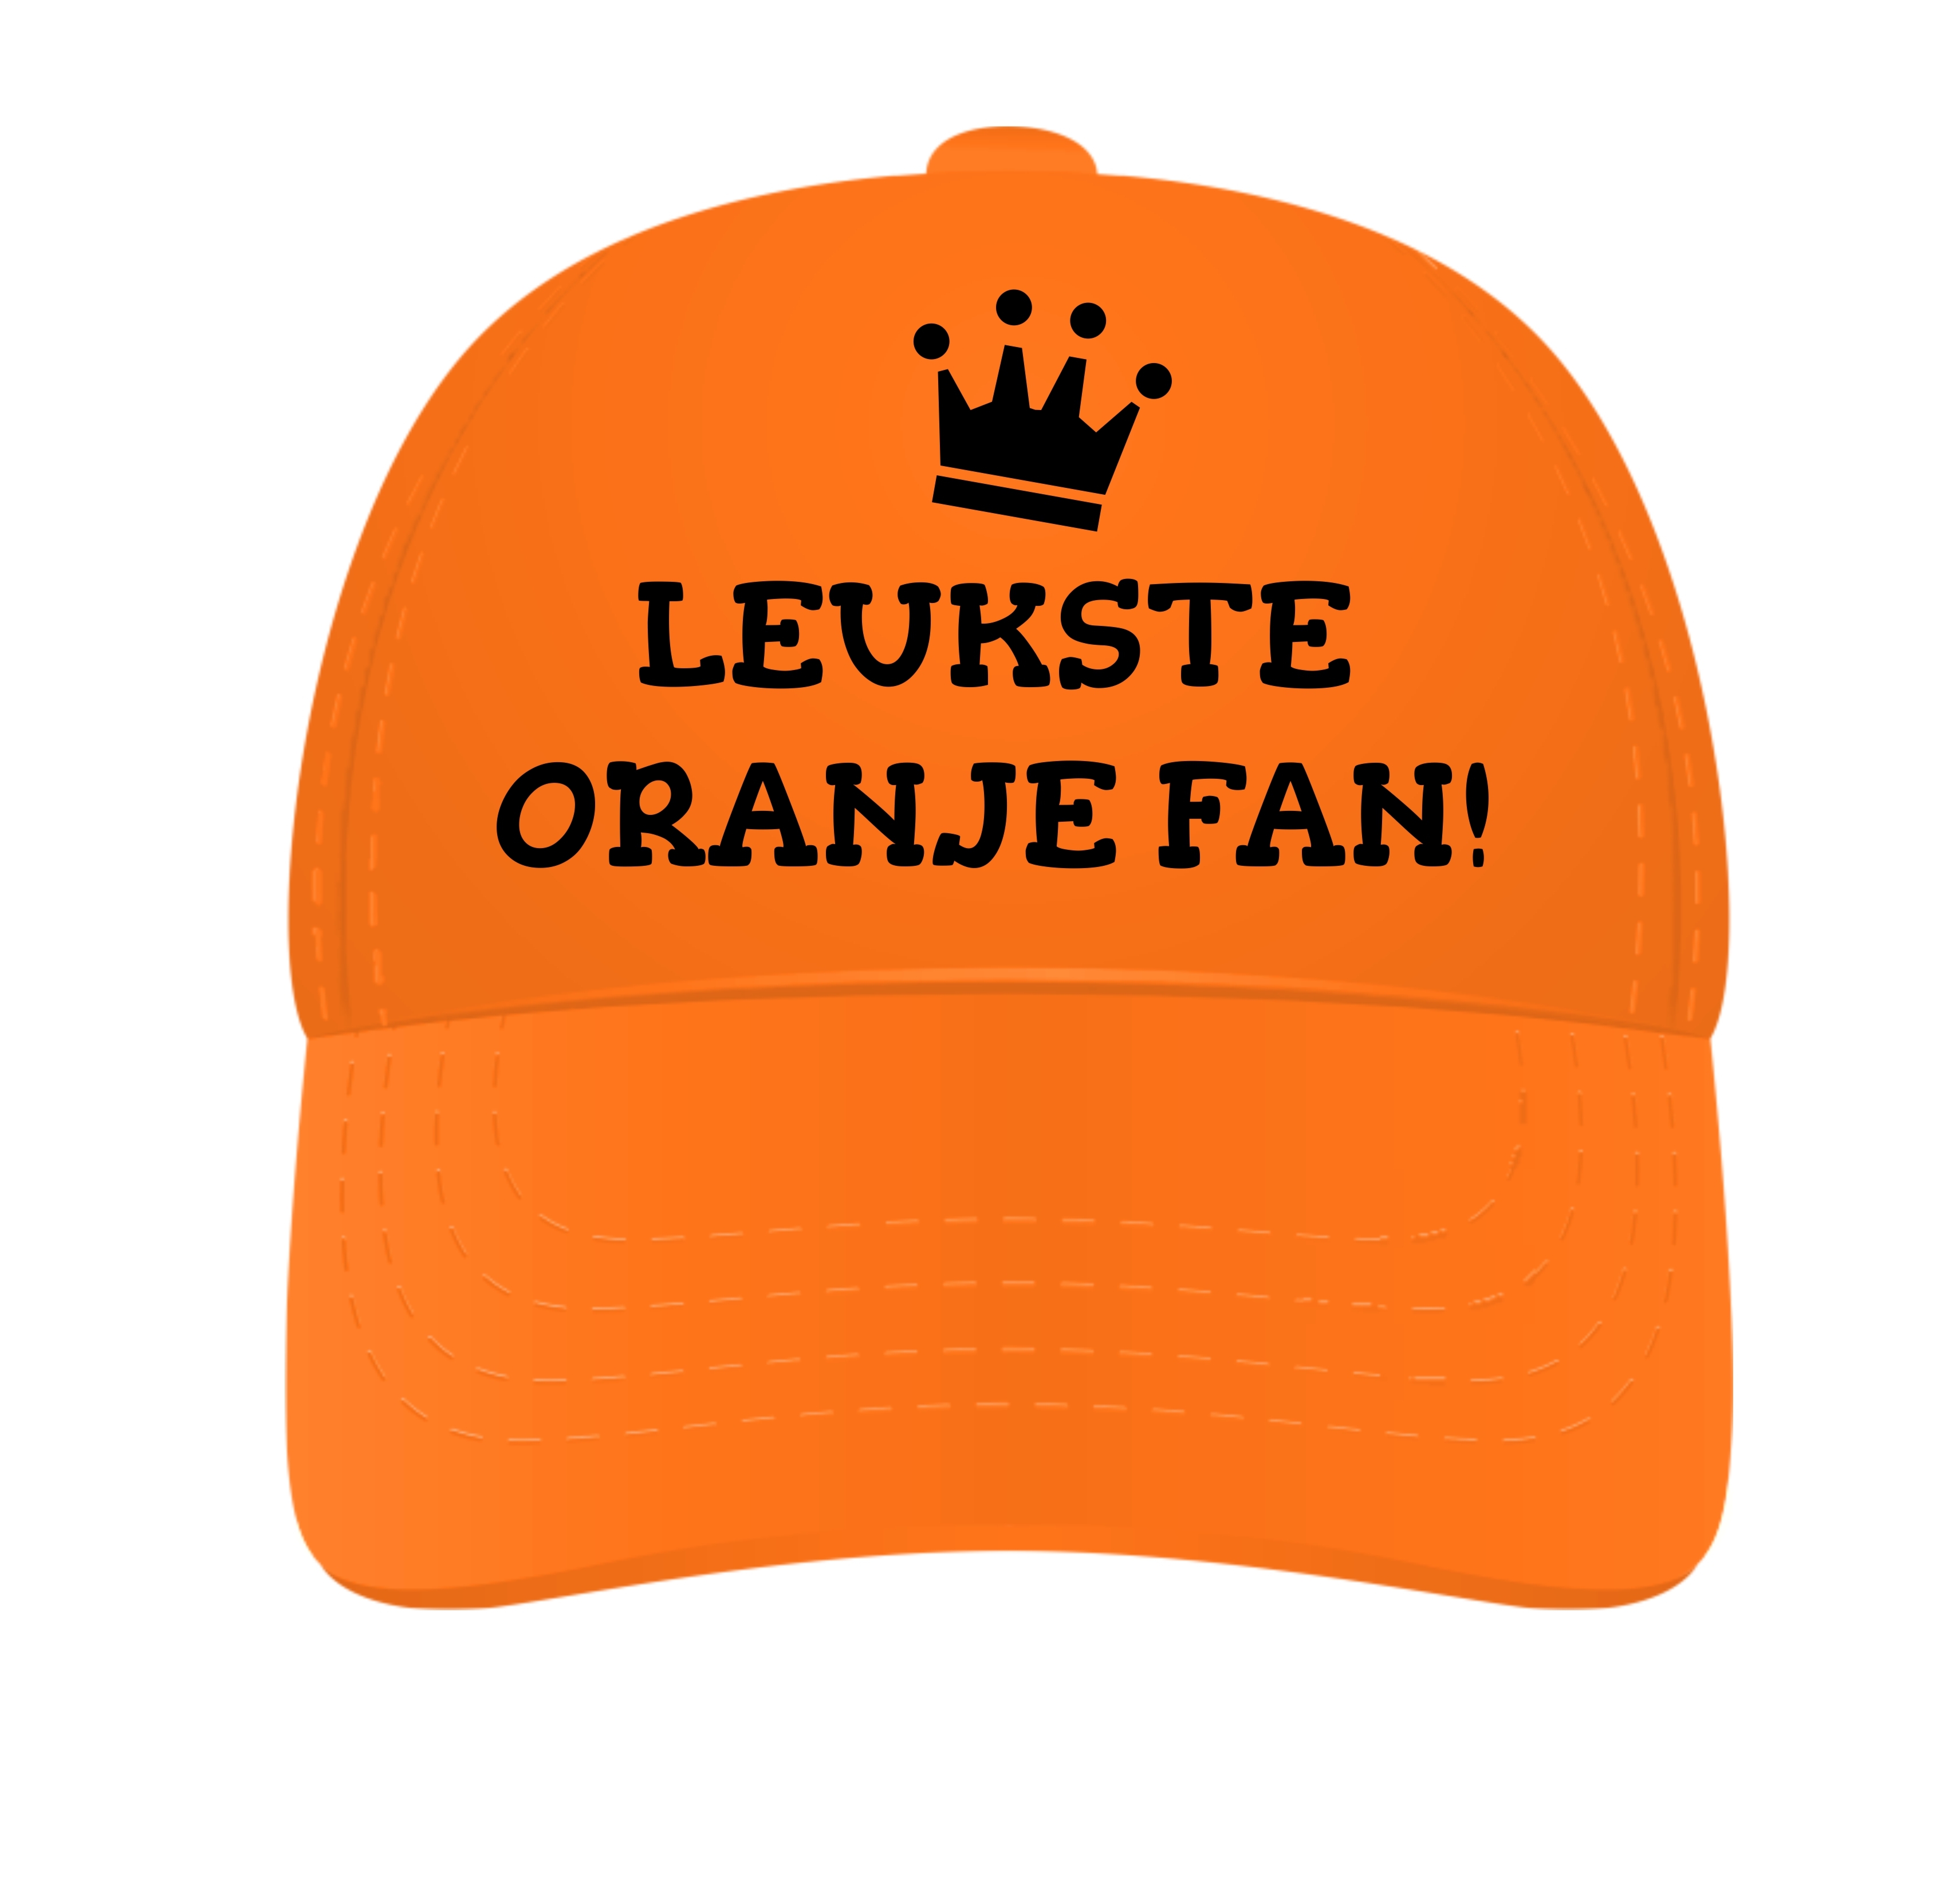 Oranje pet voor de leukste oranje fan van het koninklijke huis!